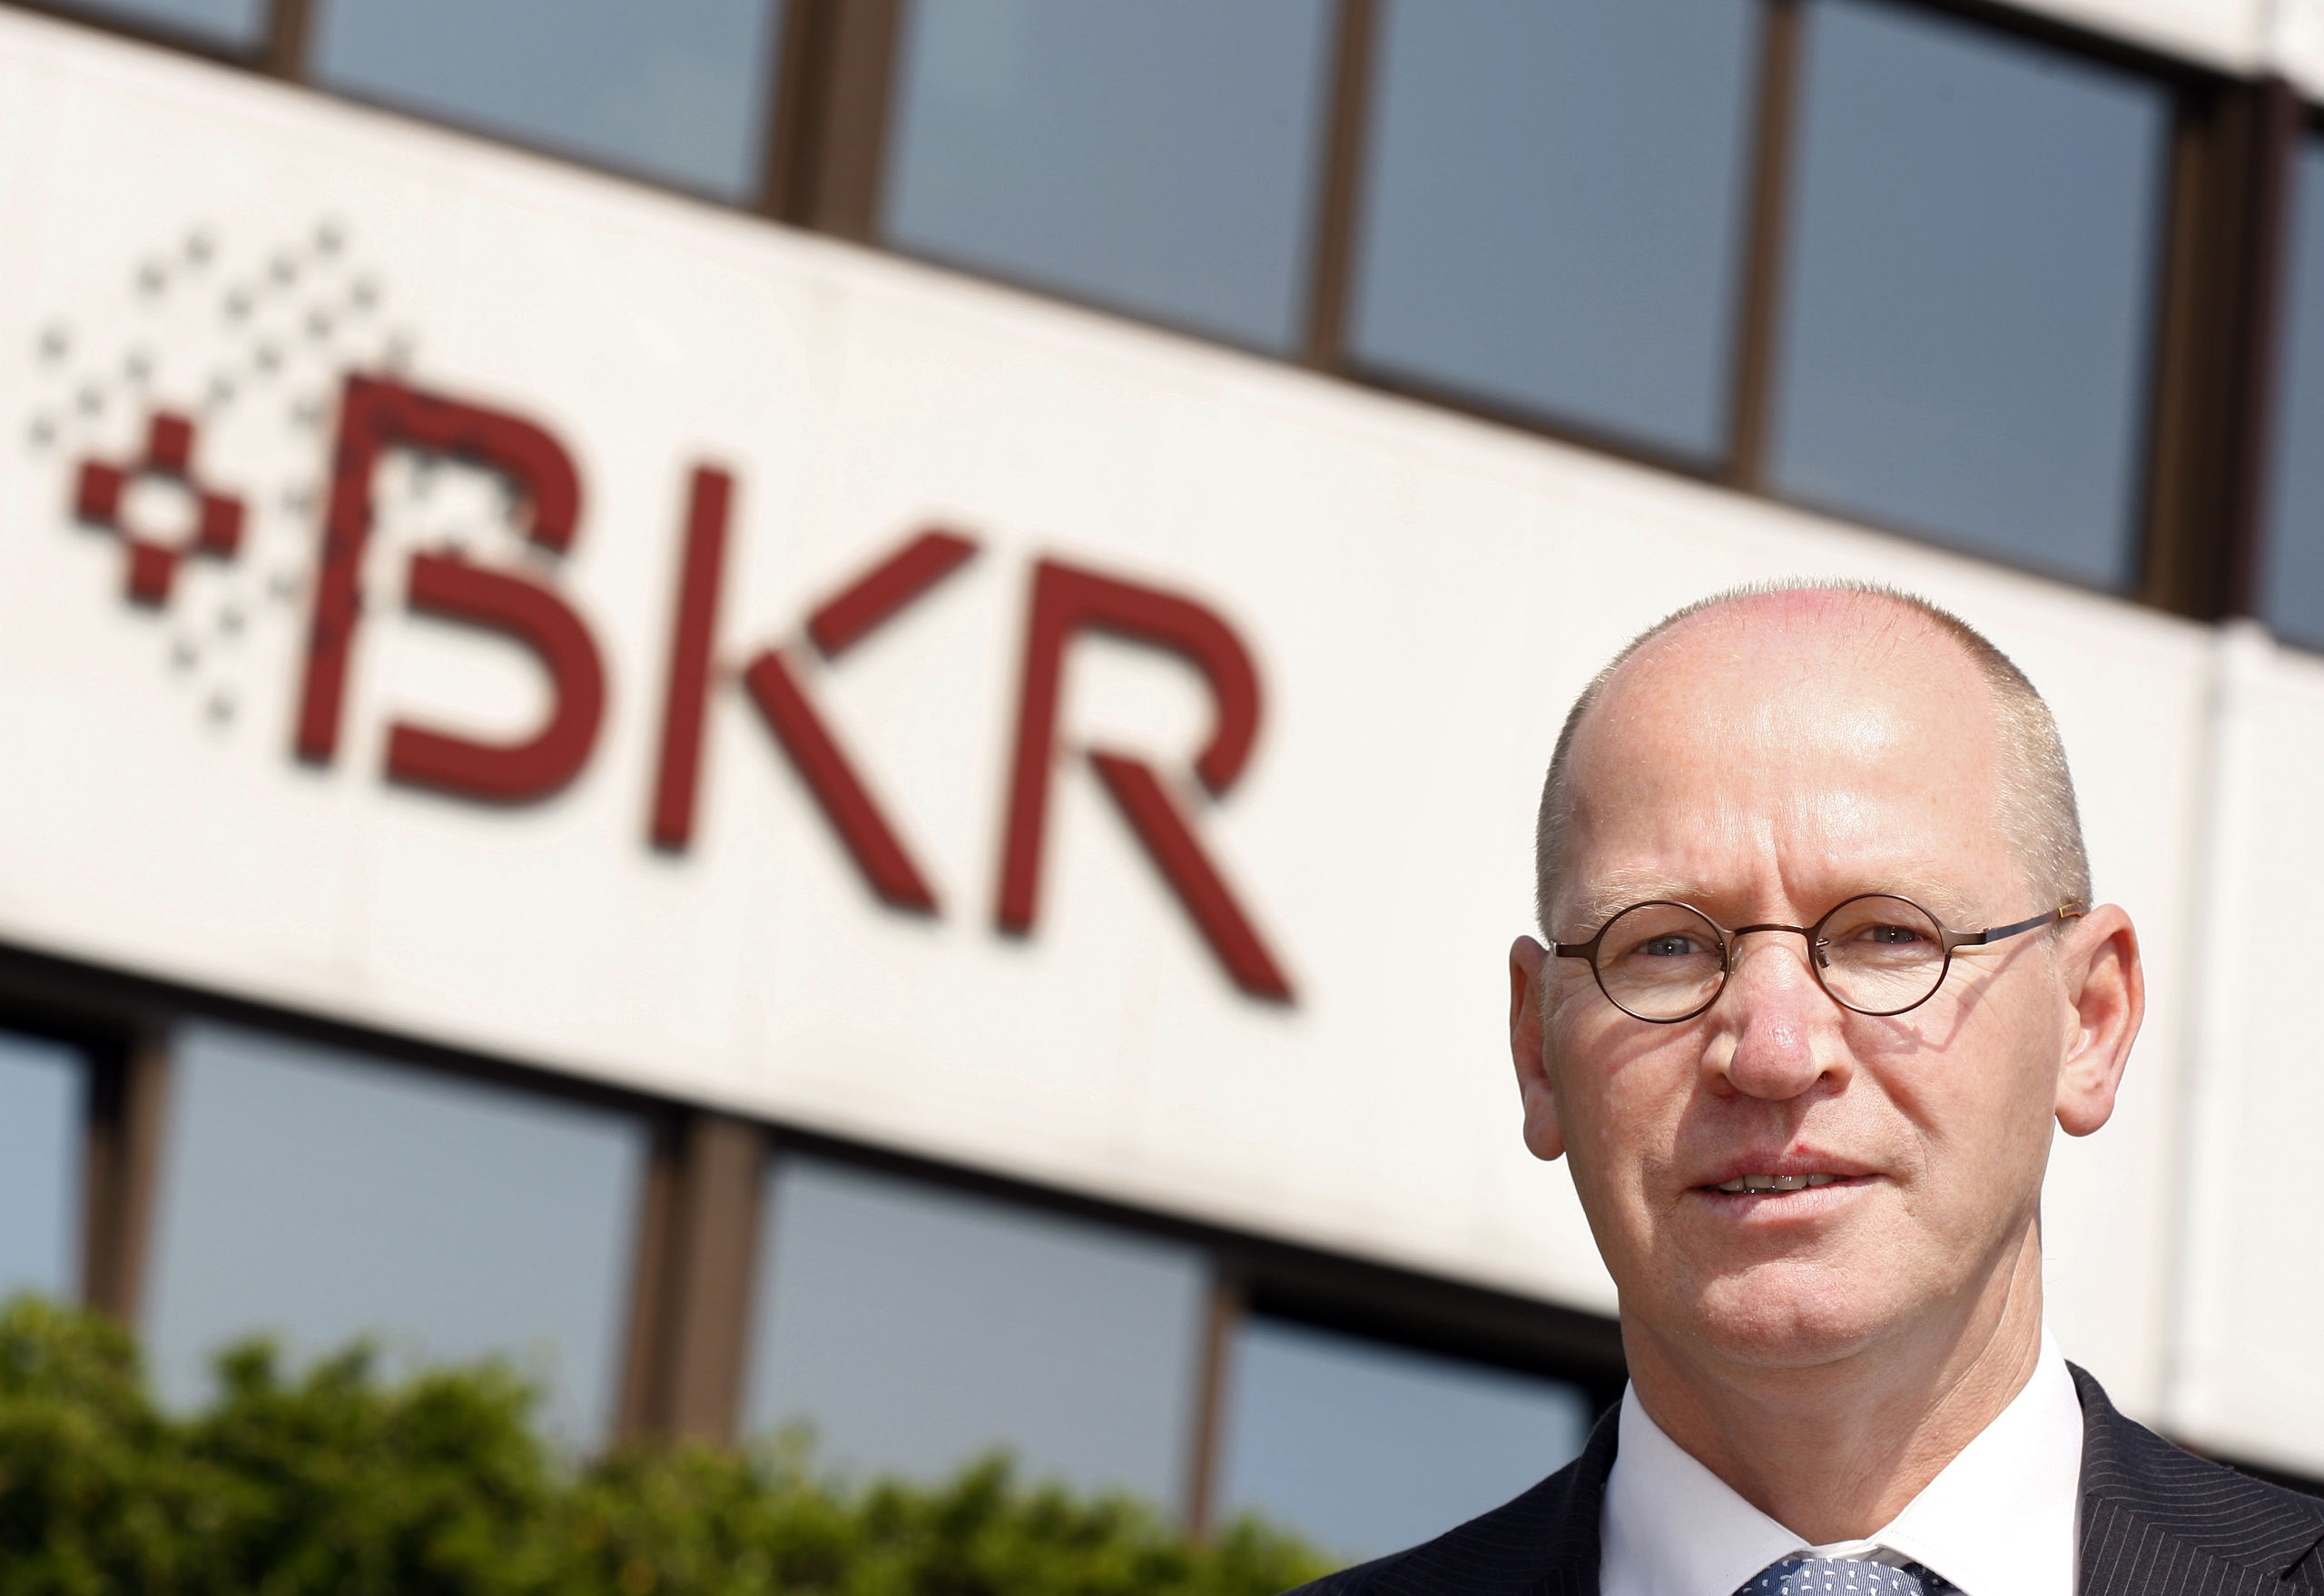 Peter van den Bosch, de algemeen directeur van het Bureau Krediet Registratie BKR. ANP ROBERT VOS